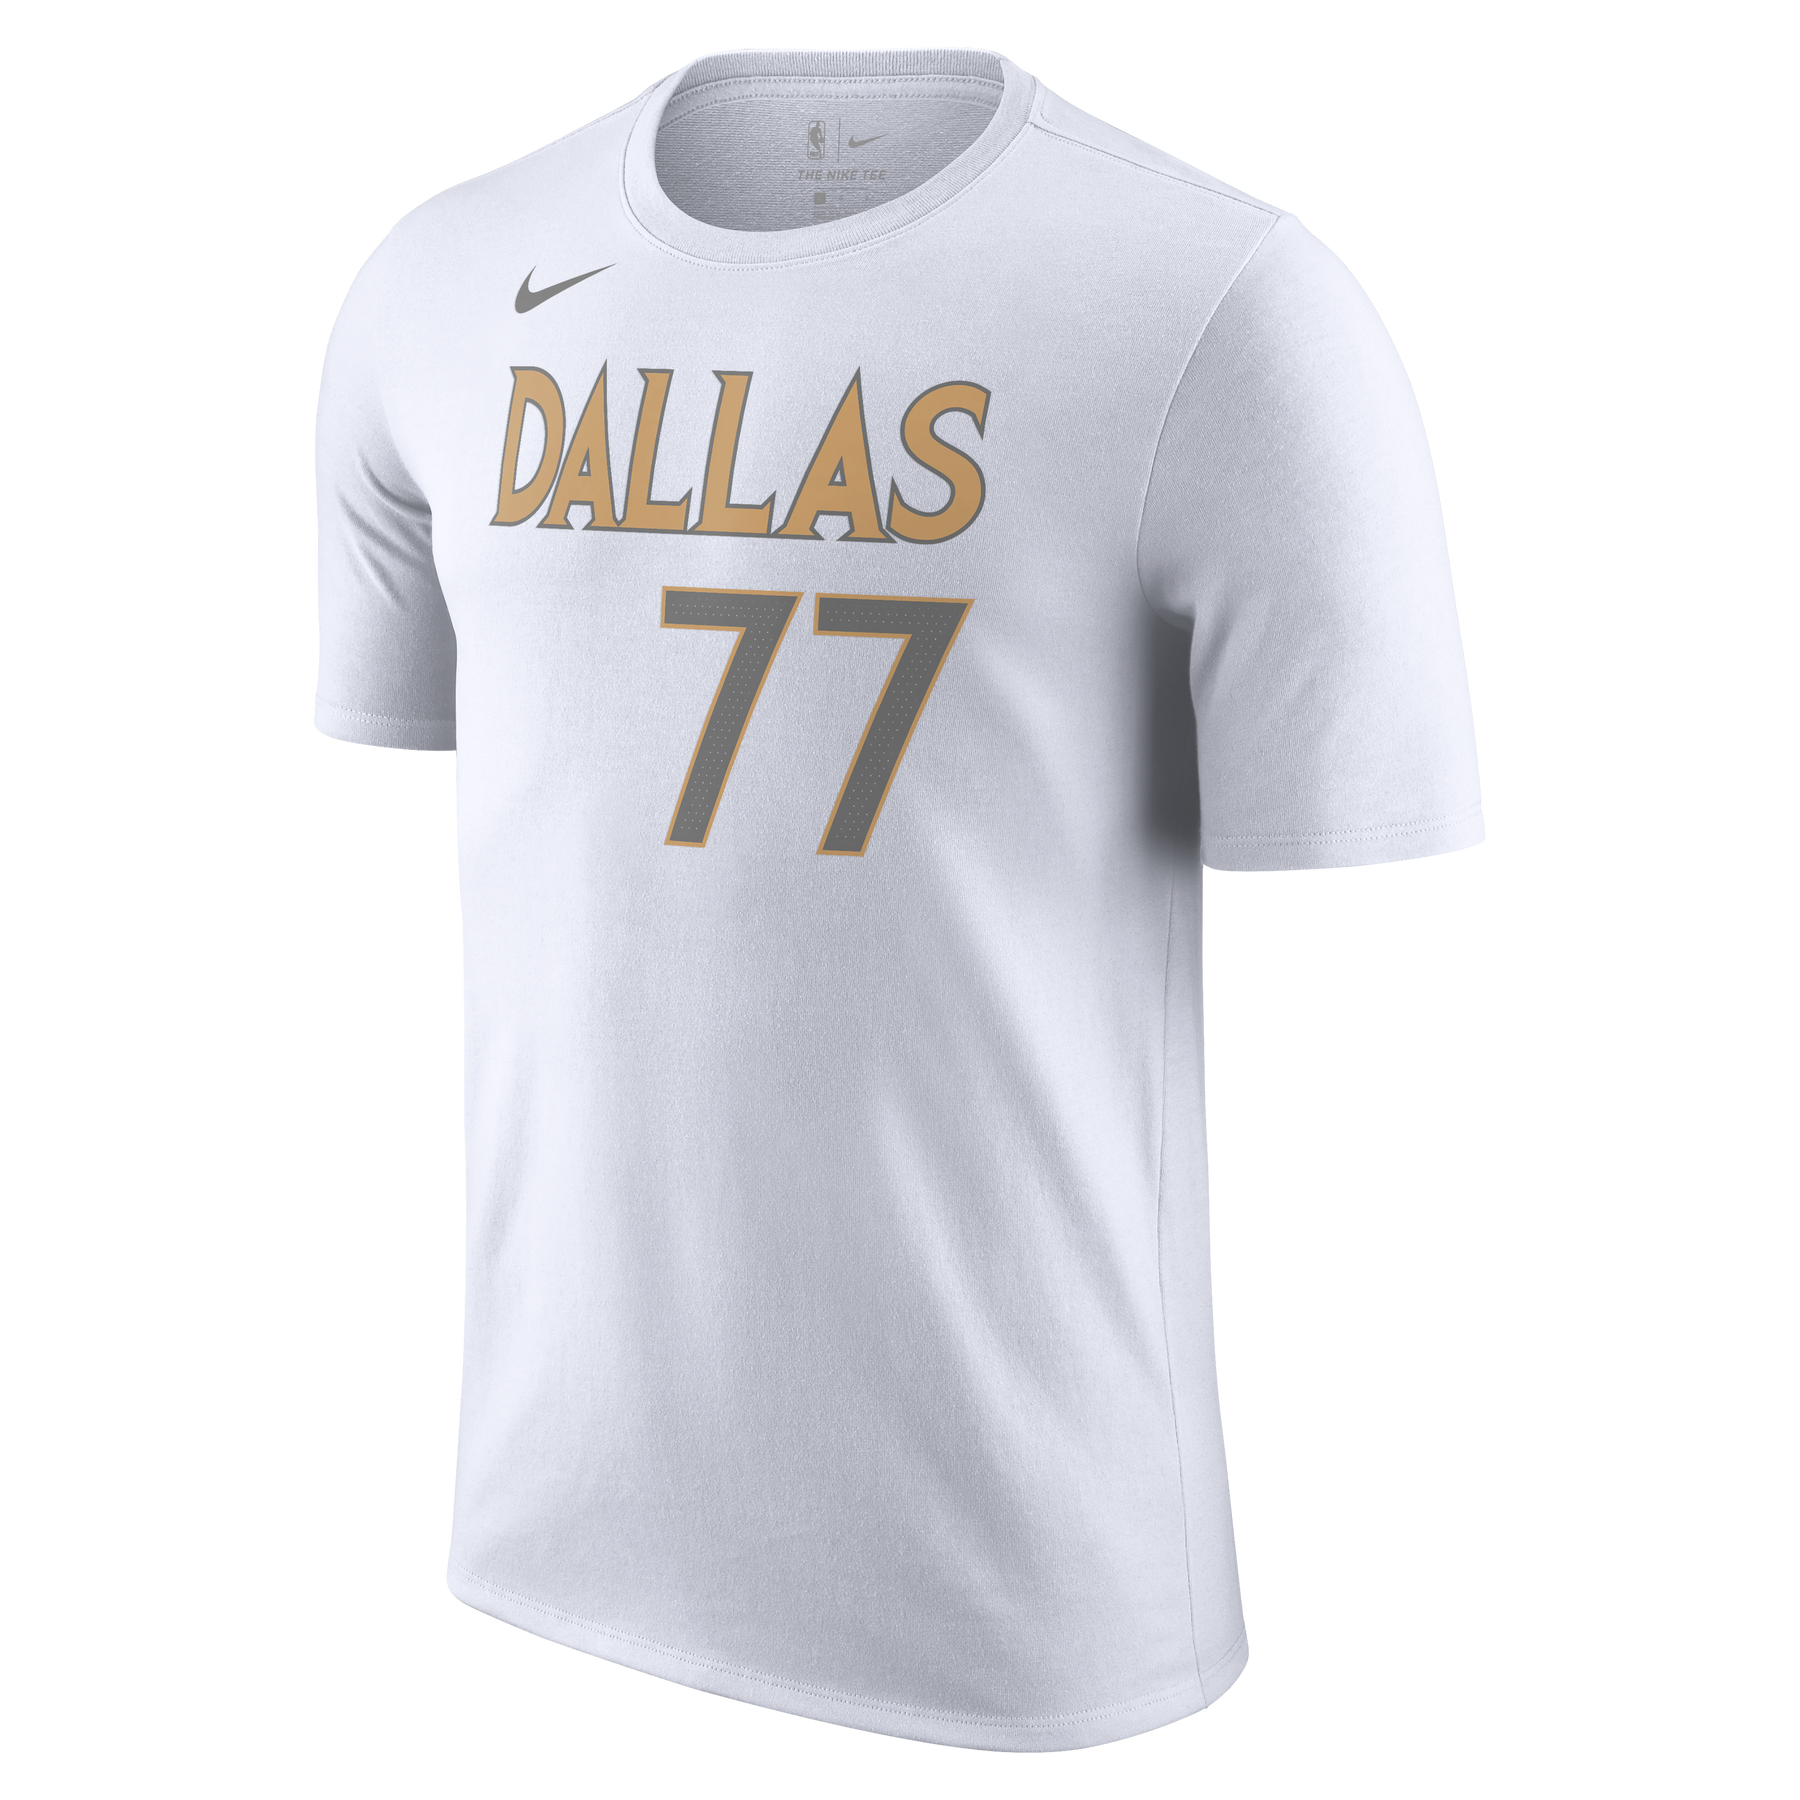 Luka DONCIC Dallas Mavericks White Nike Jersey Size XL